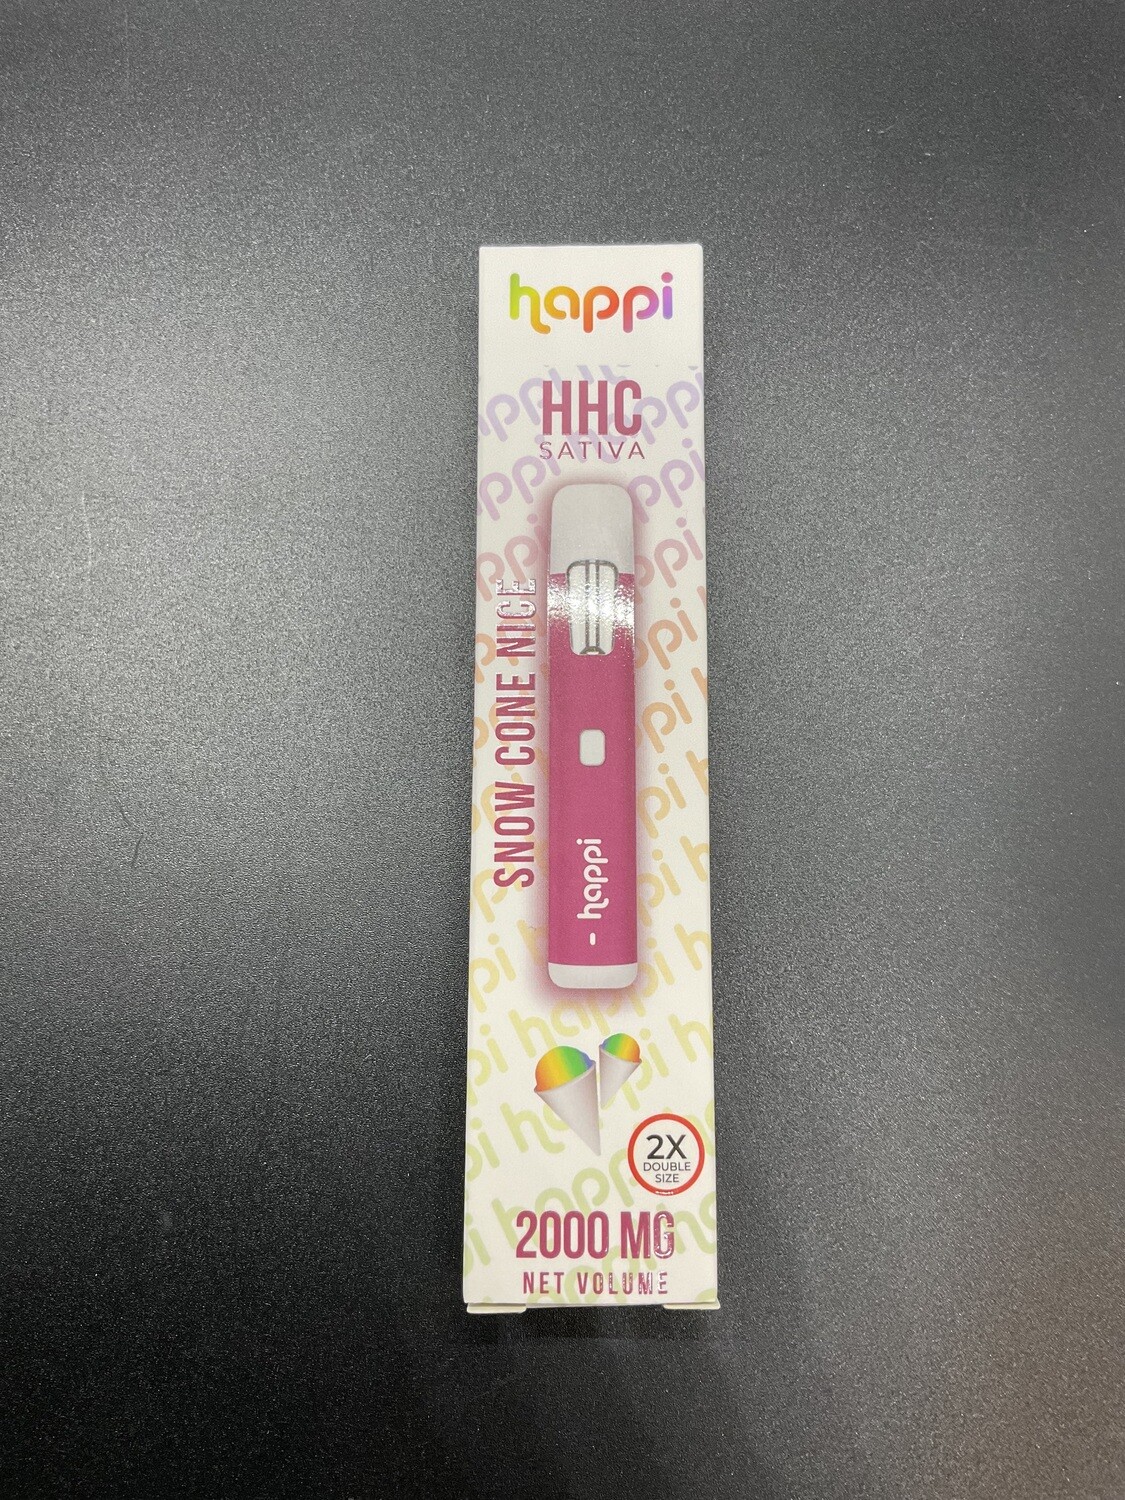 DISP - Happi HHC Snow Cone 2ml 